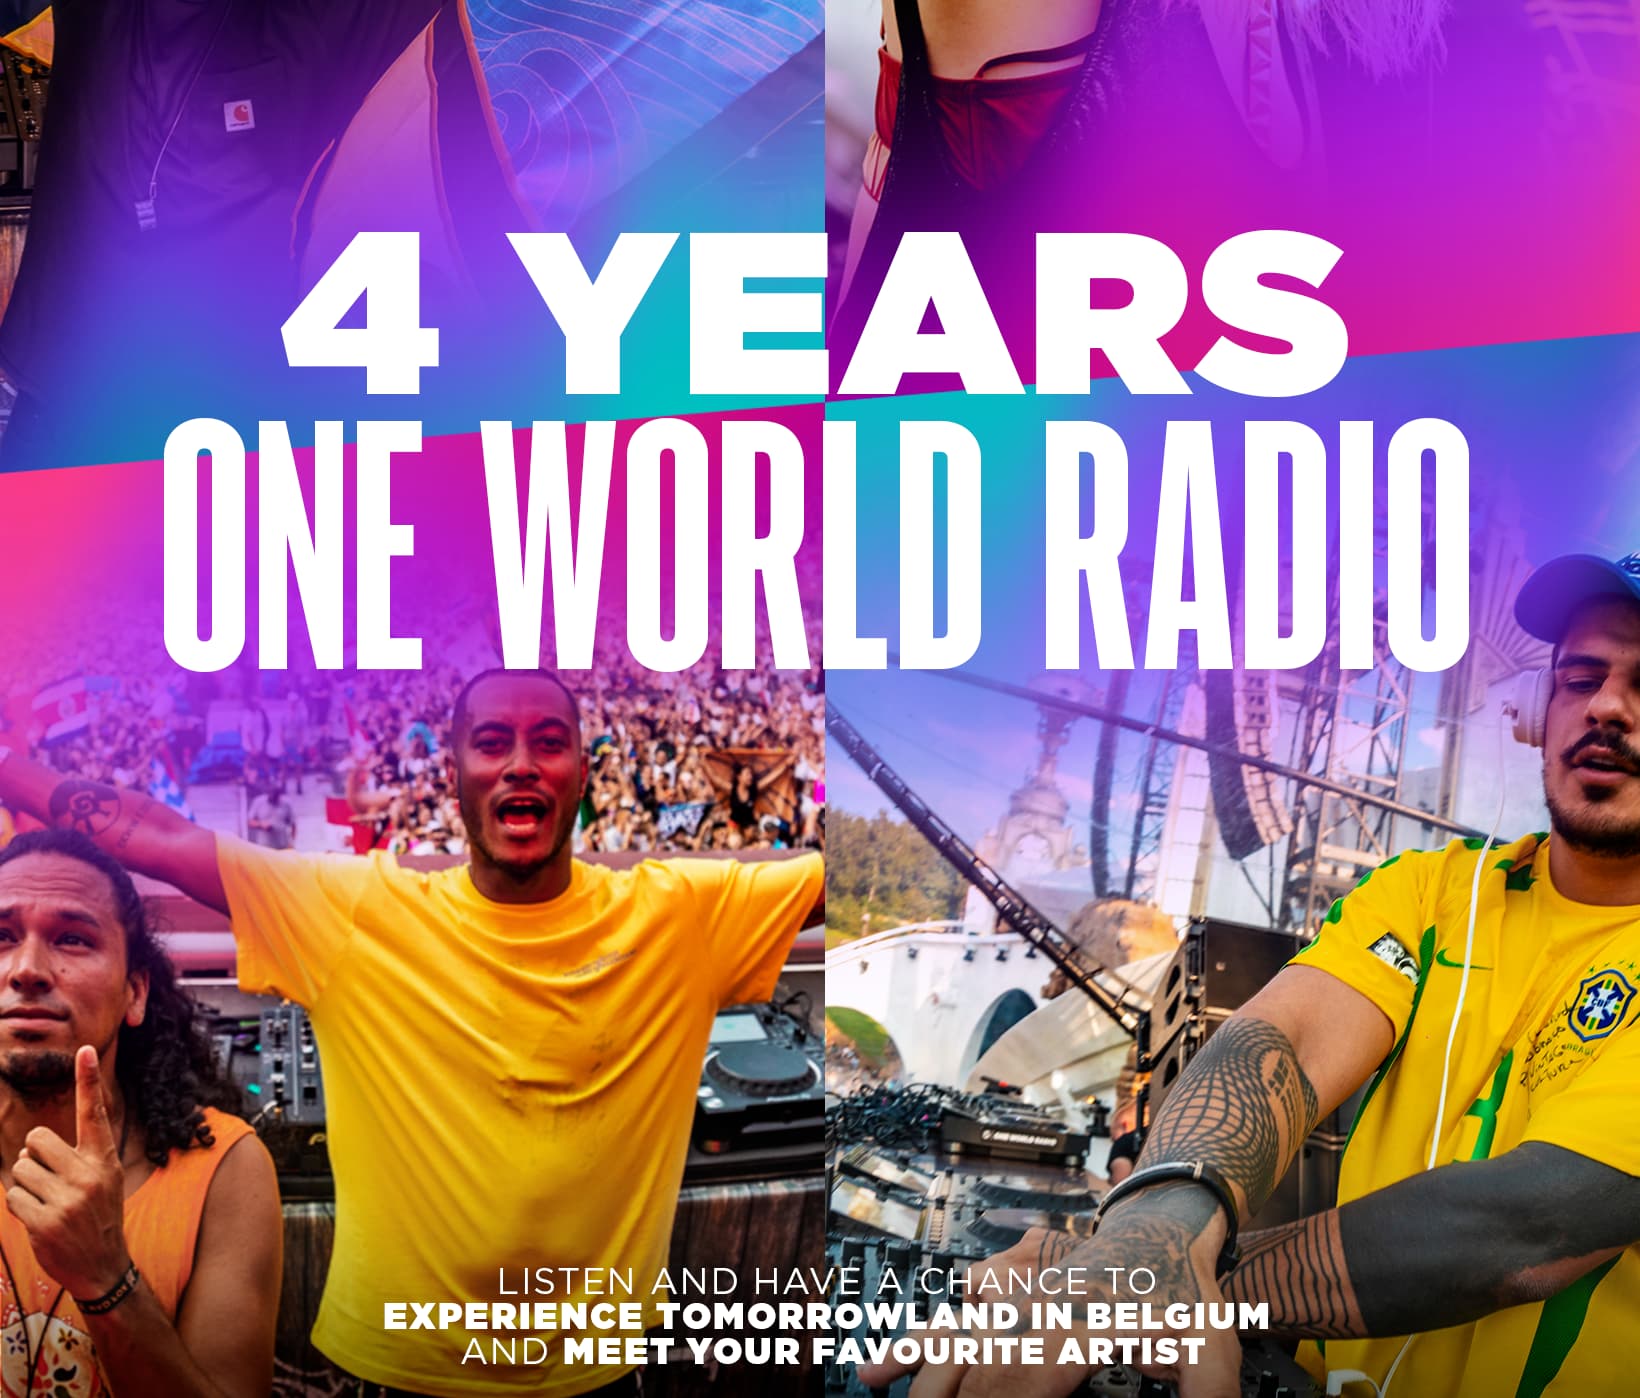 One World Radio comemora 4 anos com uma promoção incrível!